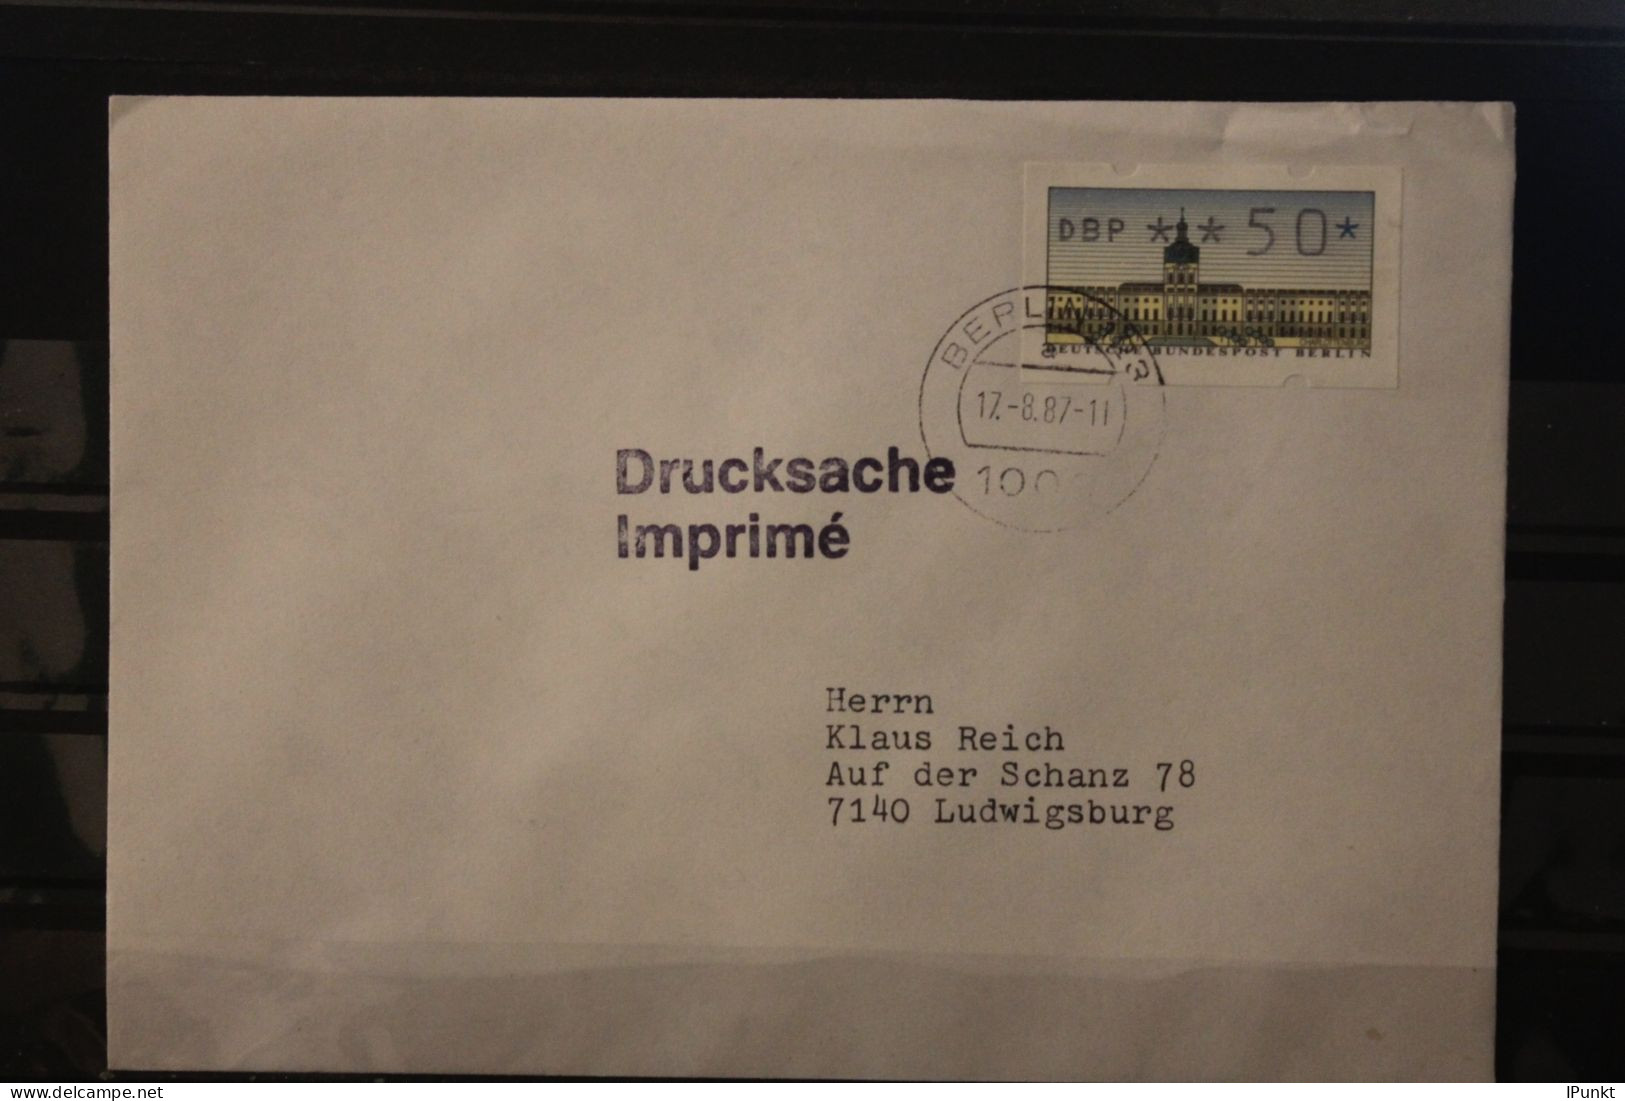 Berlin 123; ATM ; Erstinbetriebnahmetag 17.08.87; Drucksache, Befördert - Machine Labels [ATM]